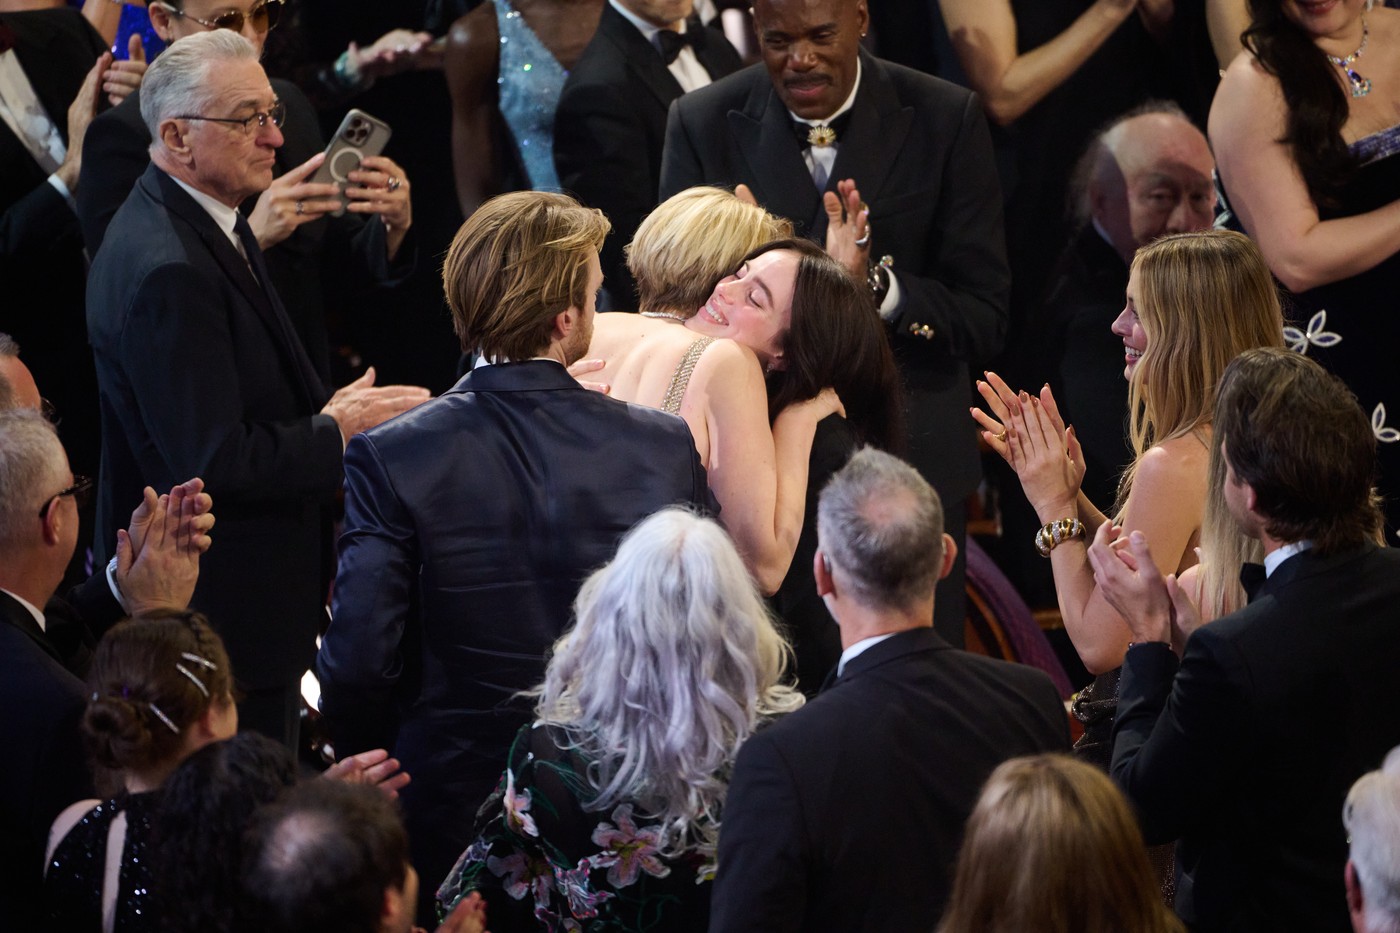 Billie Eilish a câștigat al doilea premiu Oscar din carieră. Aici este îmbrățișată imediat ce a fost anunțat premiul